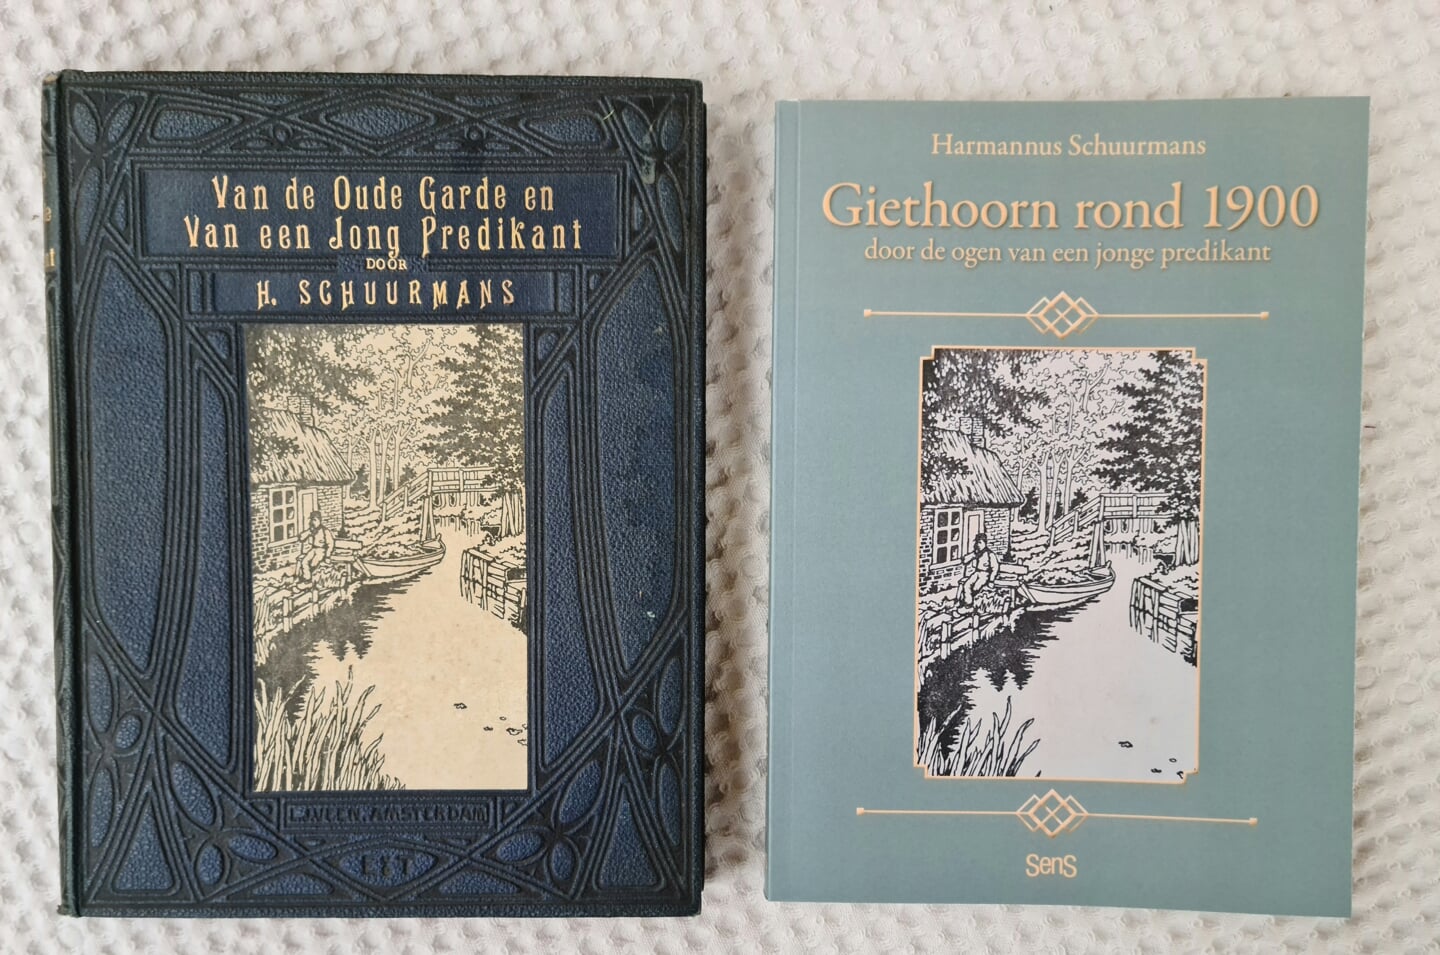 De cover van het oude en het nieuwe boek